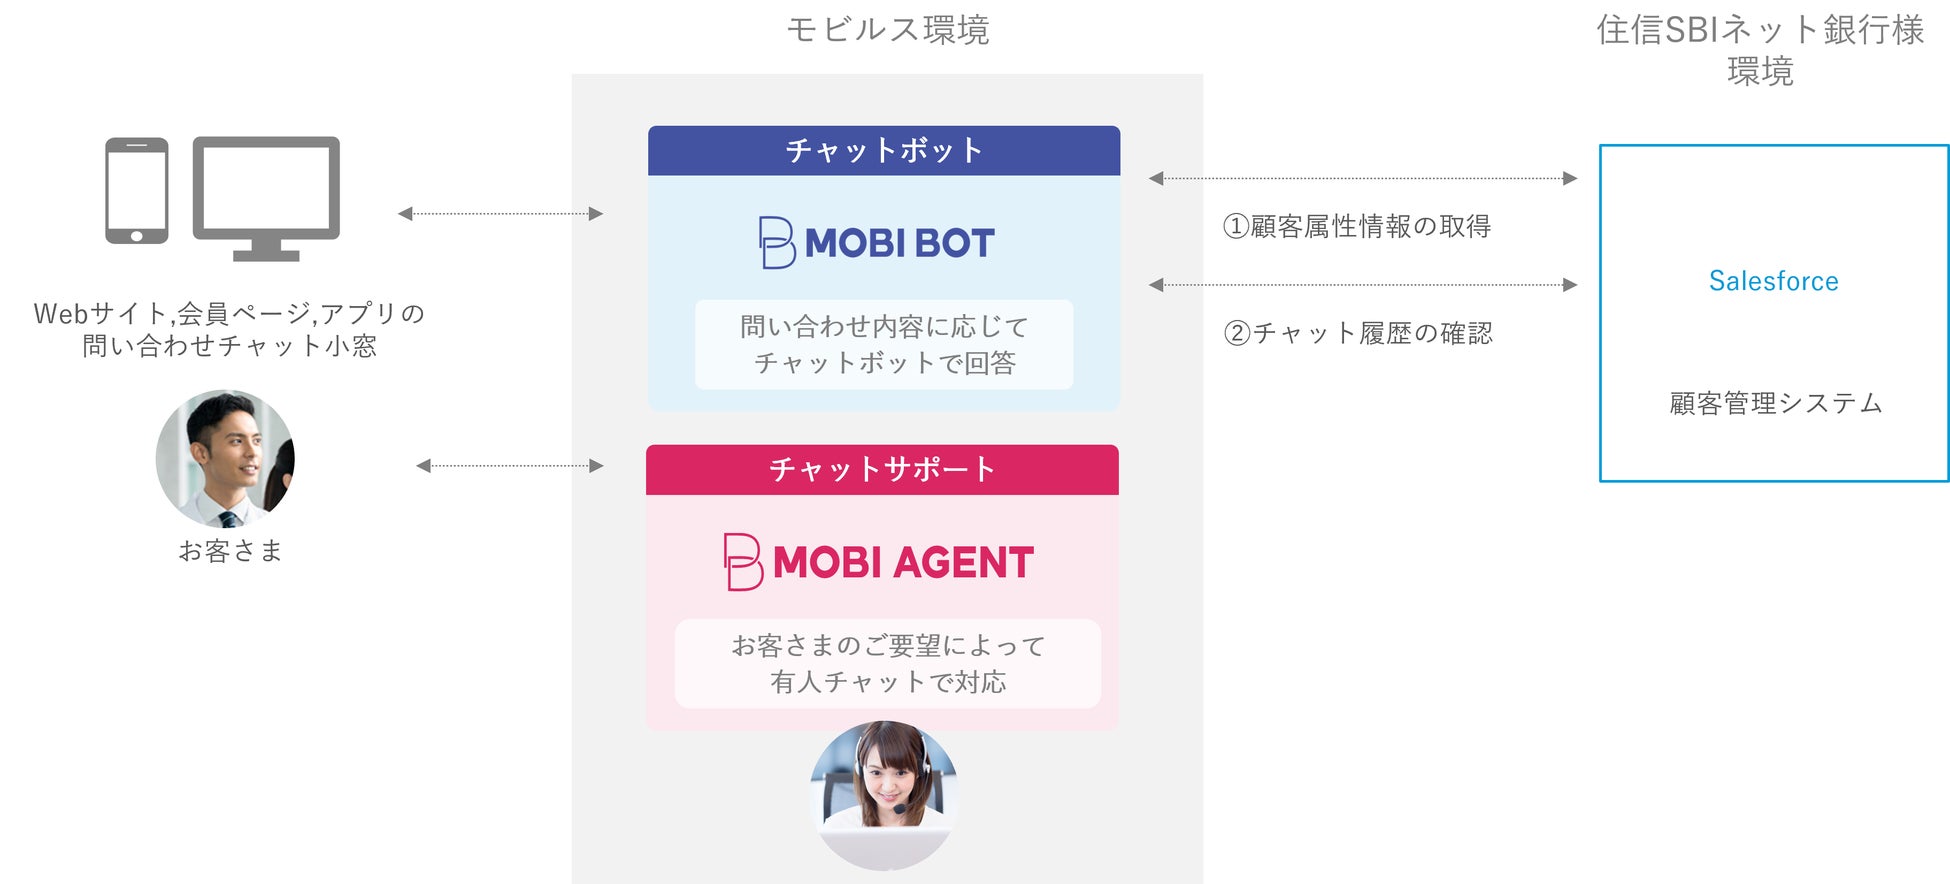 住信SBIネット銀行のお客さま問い合わせに『MOBI AGENT』『MOBI BOT』を提供！